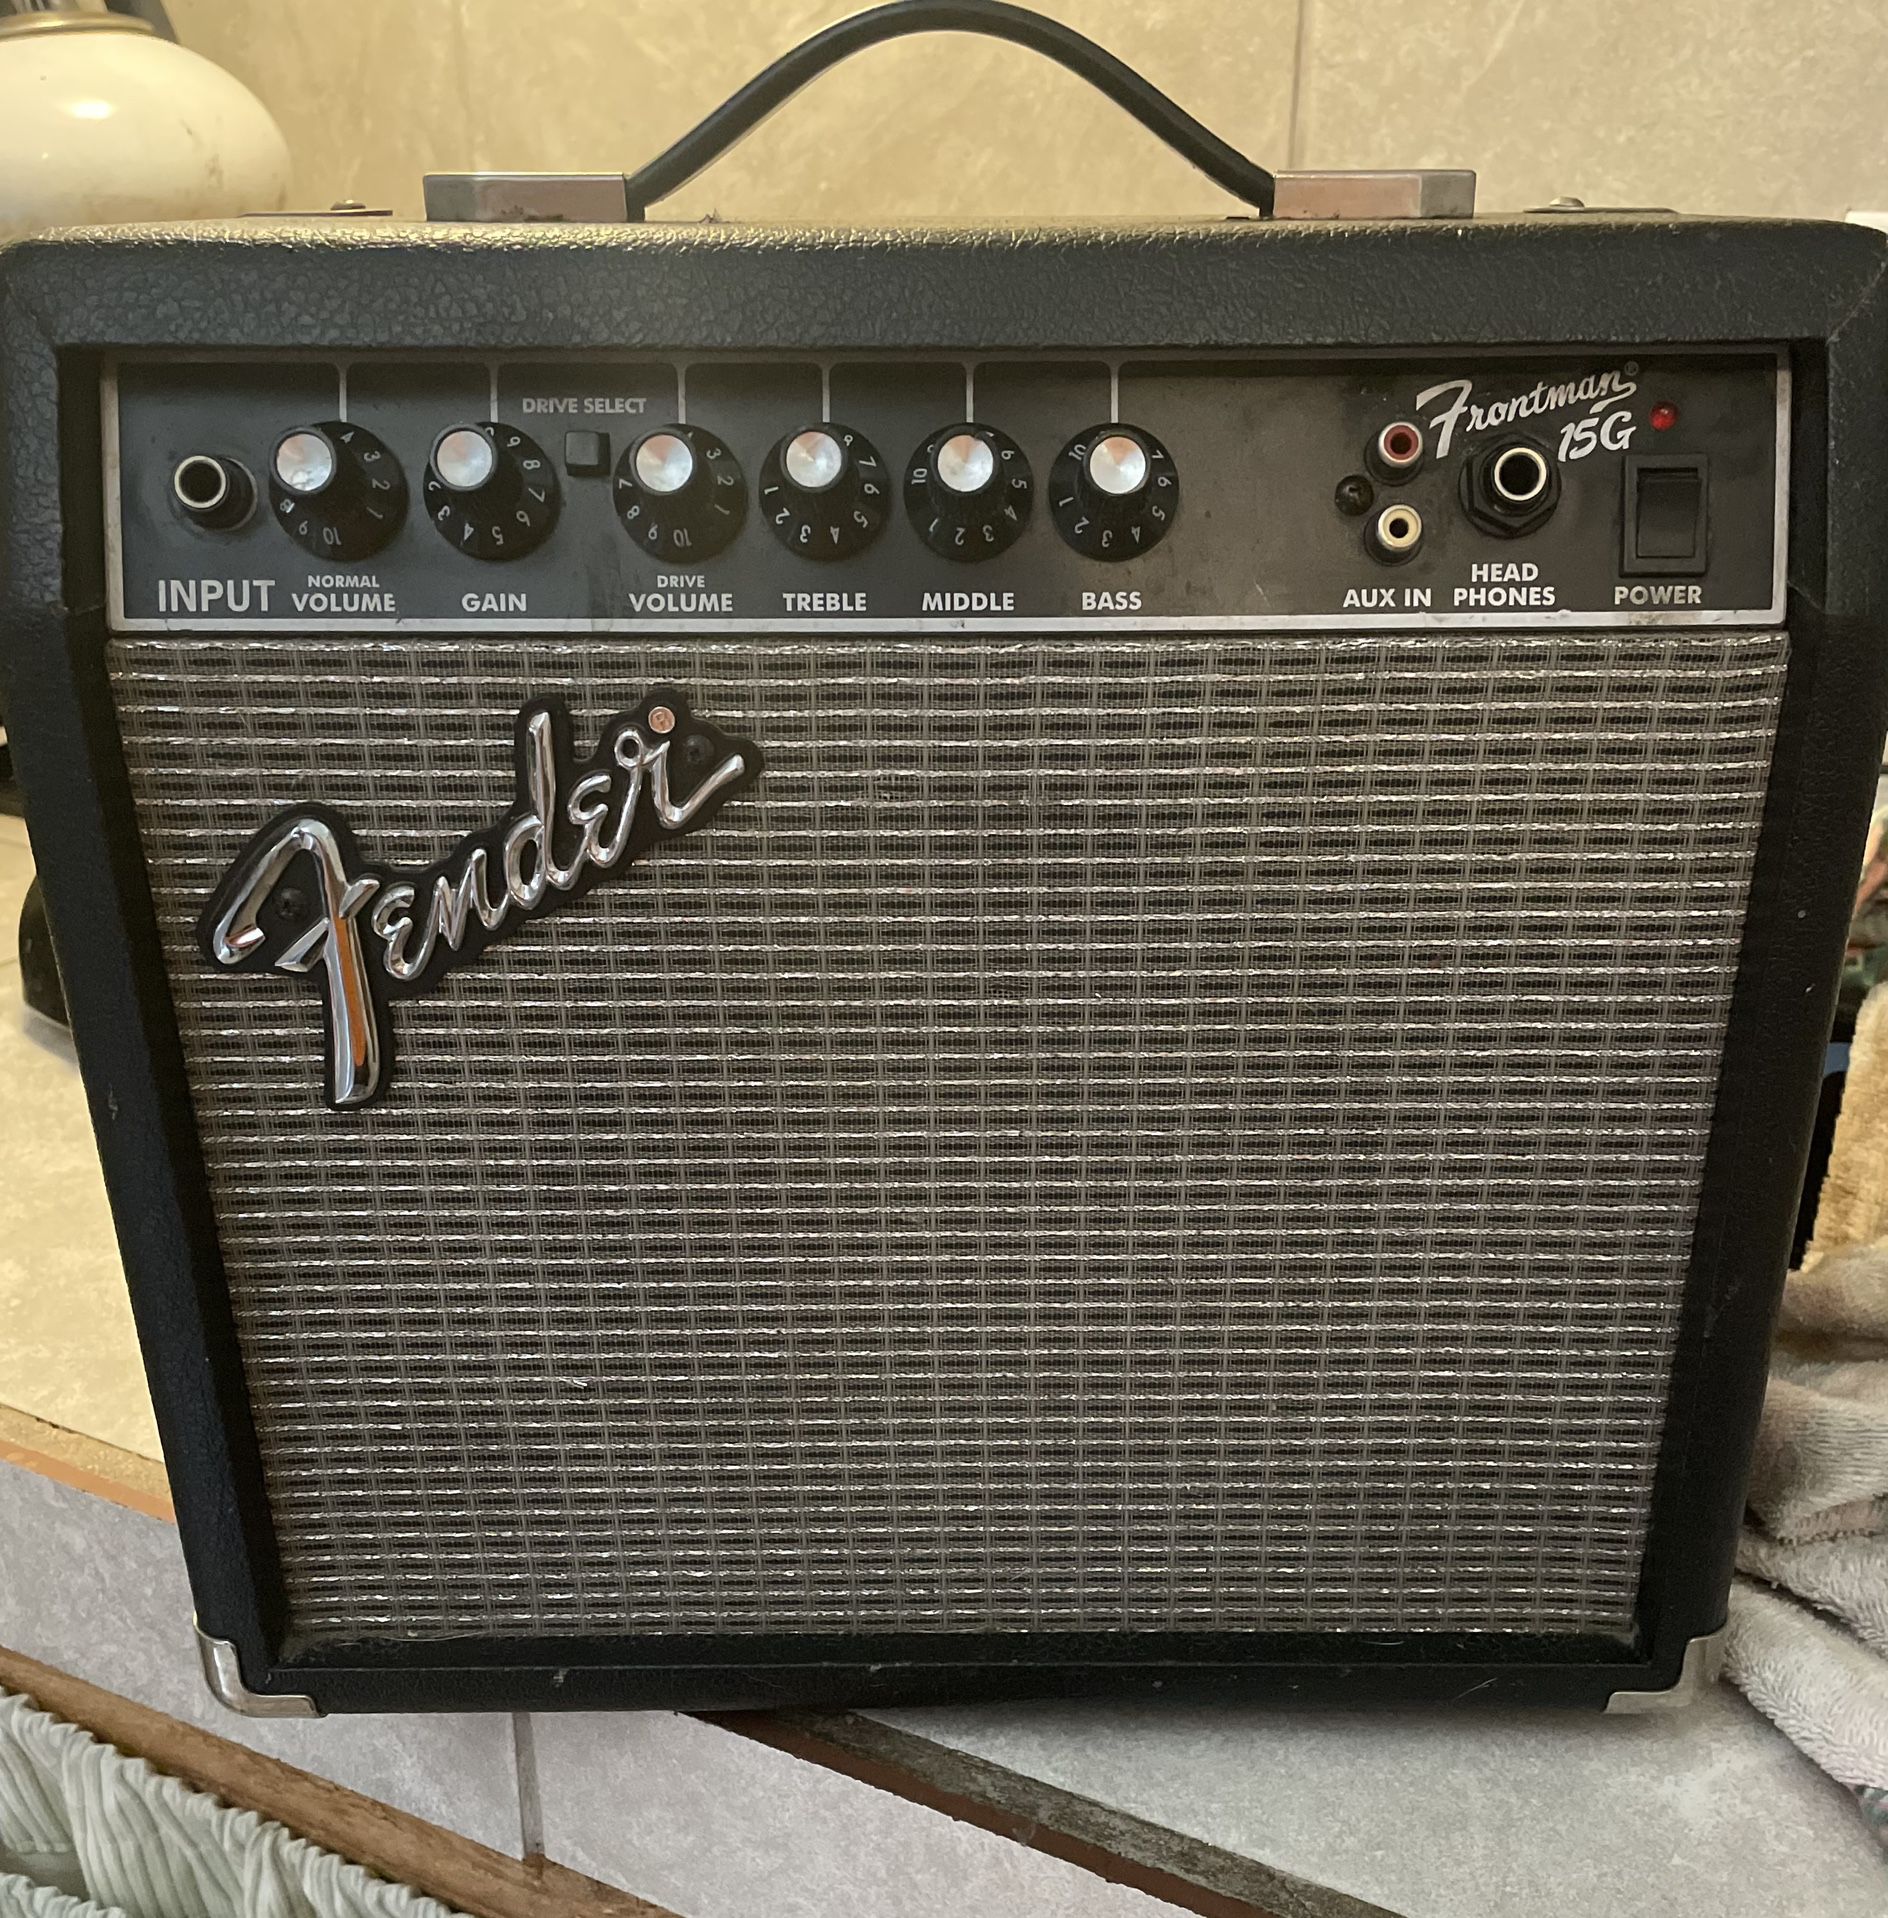 Fender 15g amp